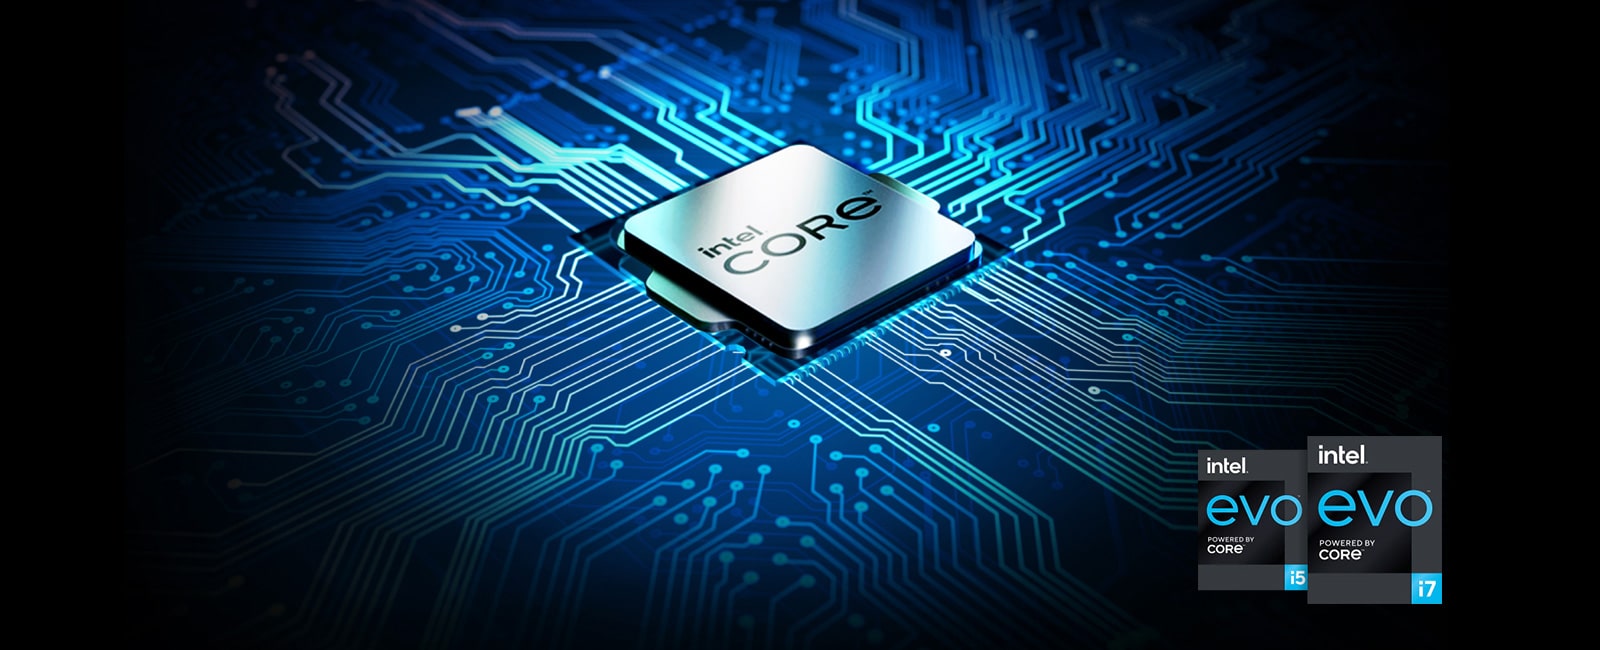 Het toont de Intel® Core™ chip.